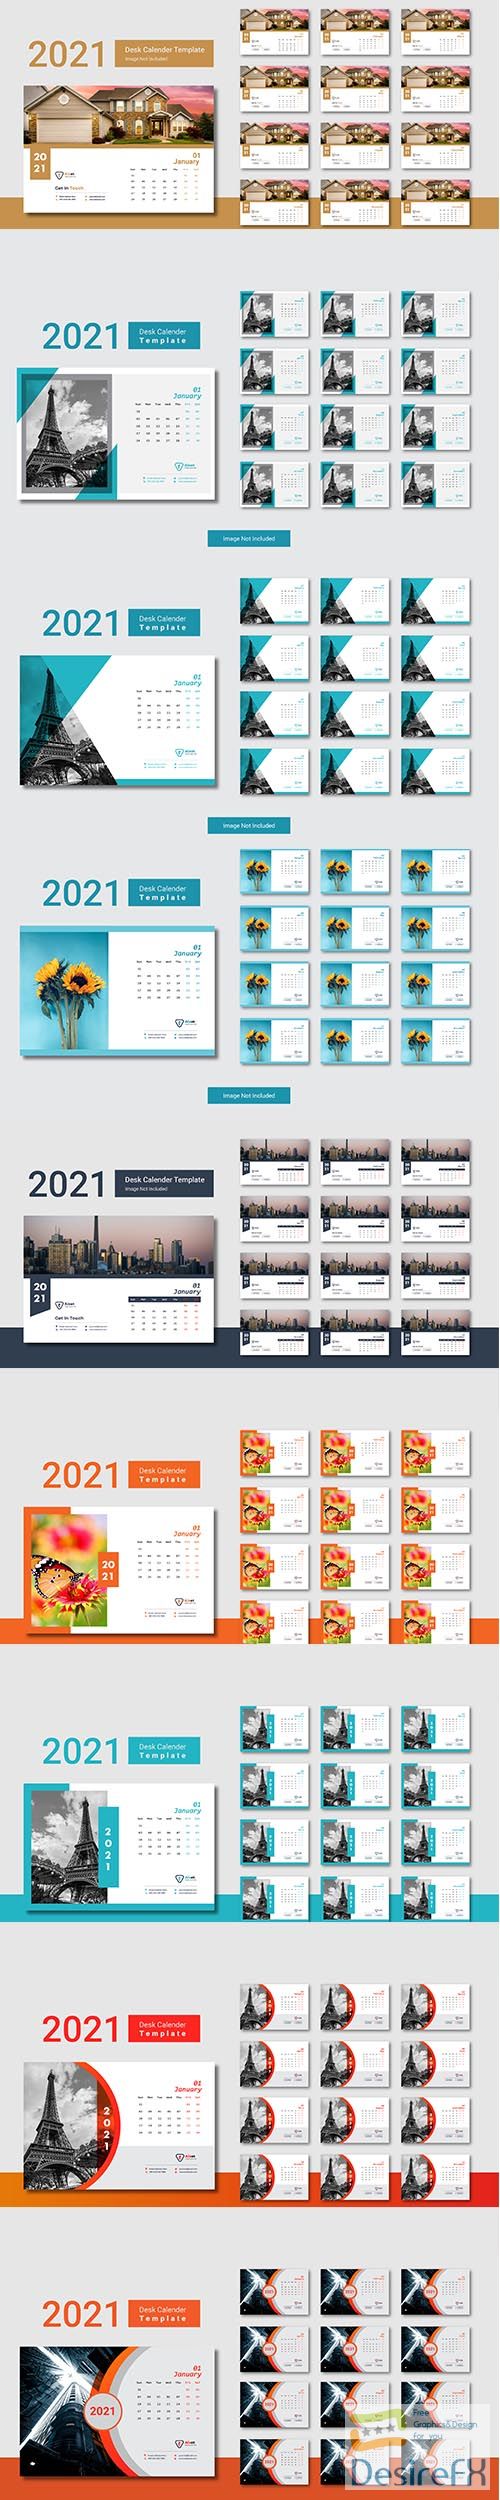 Desk calendar 2021 creative minimal template design